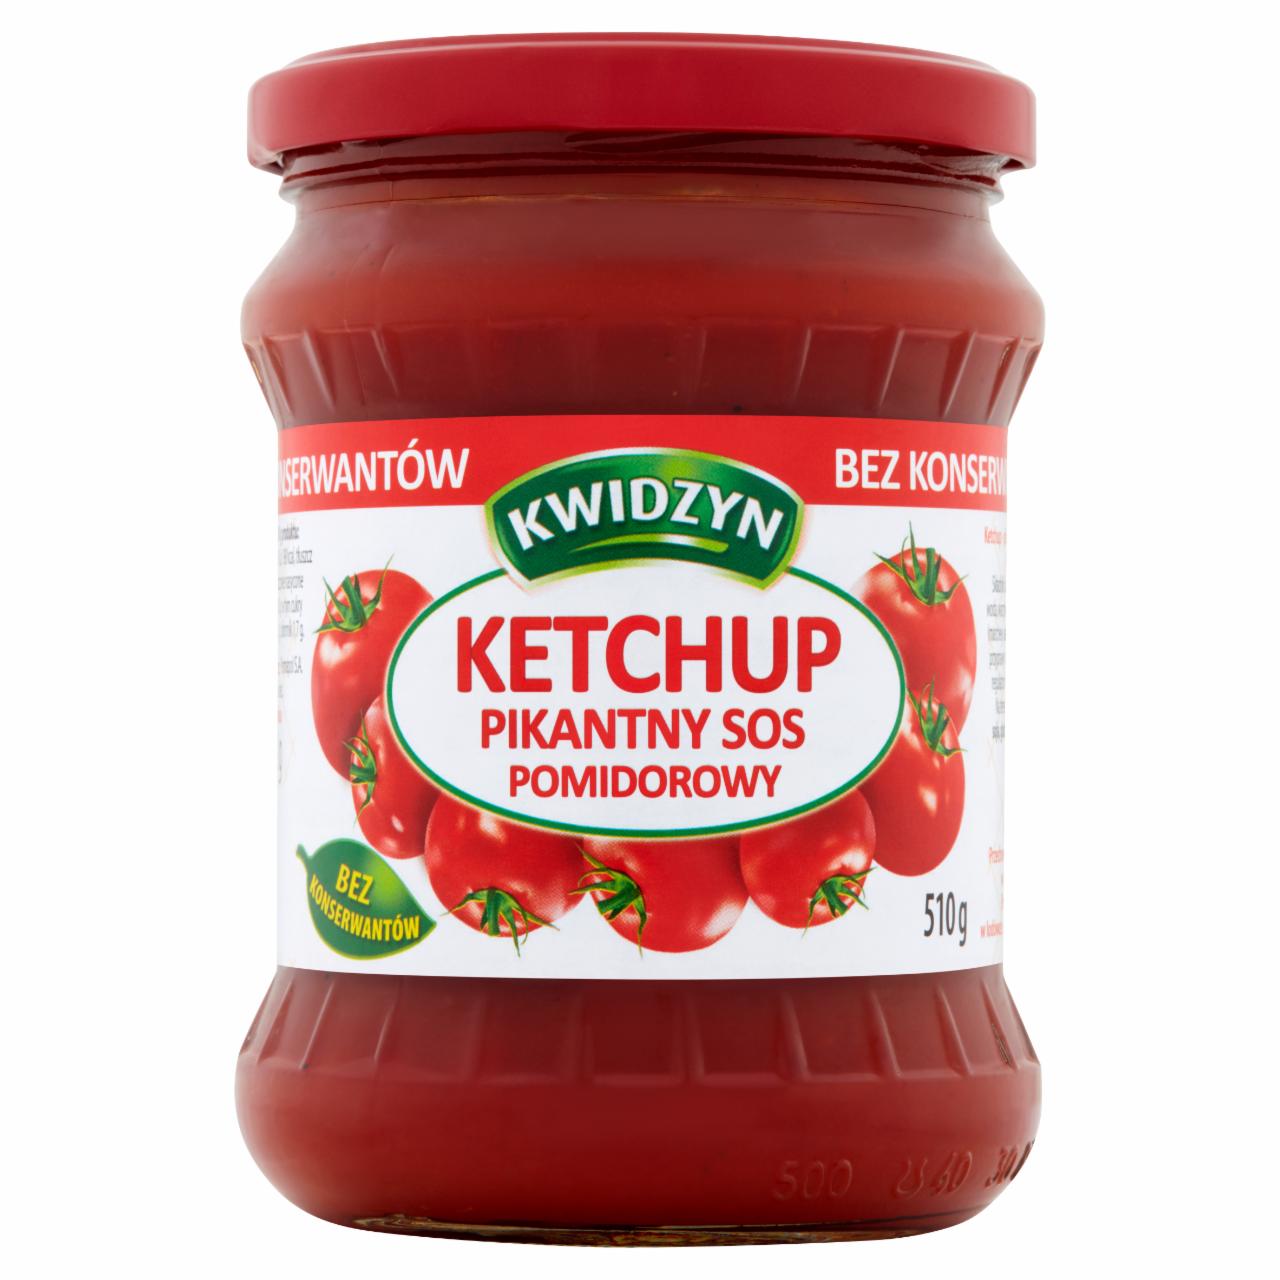 Zdjęcia - Kwidzyn Ketchup sos pomidorowy pikantny 510 g